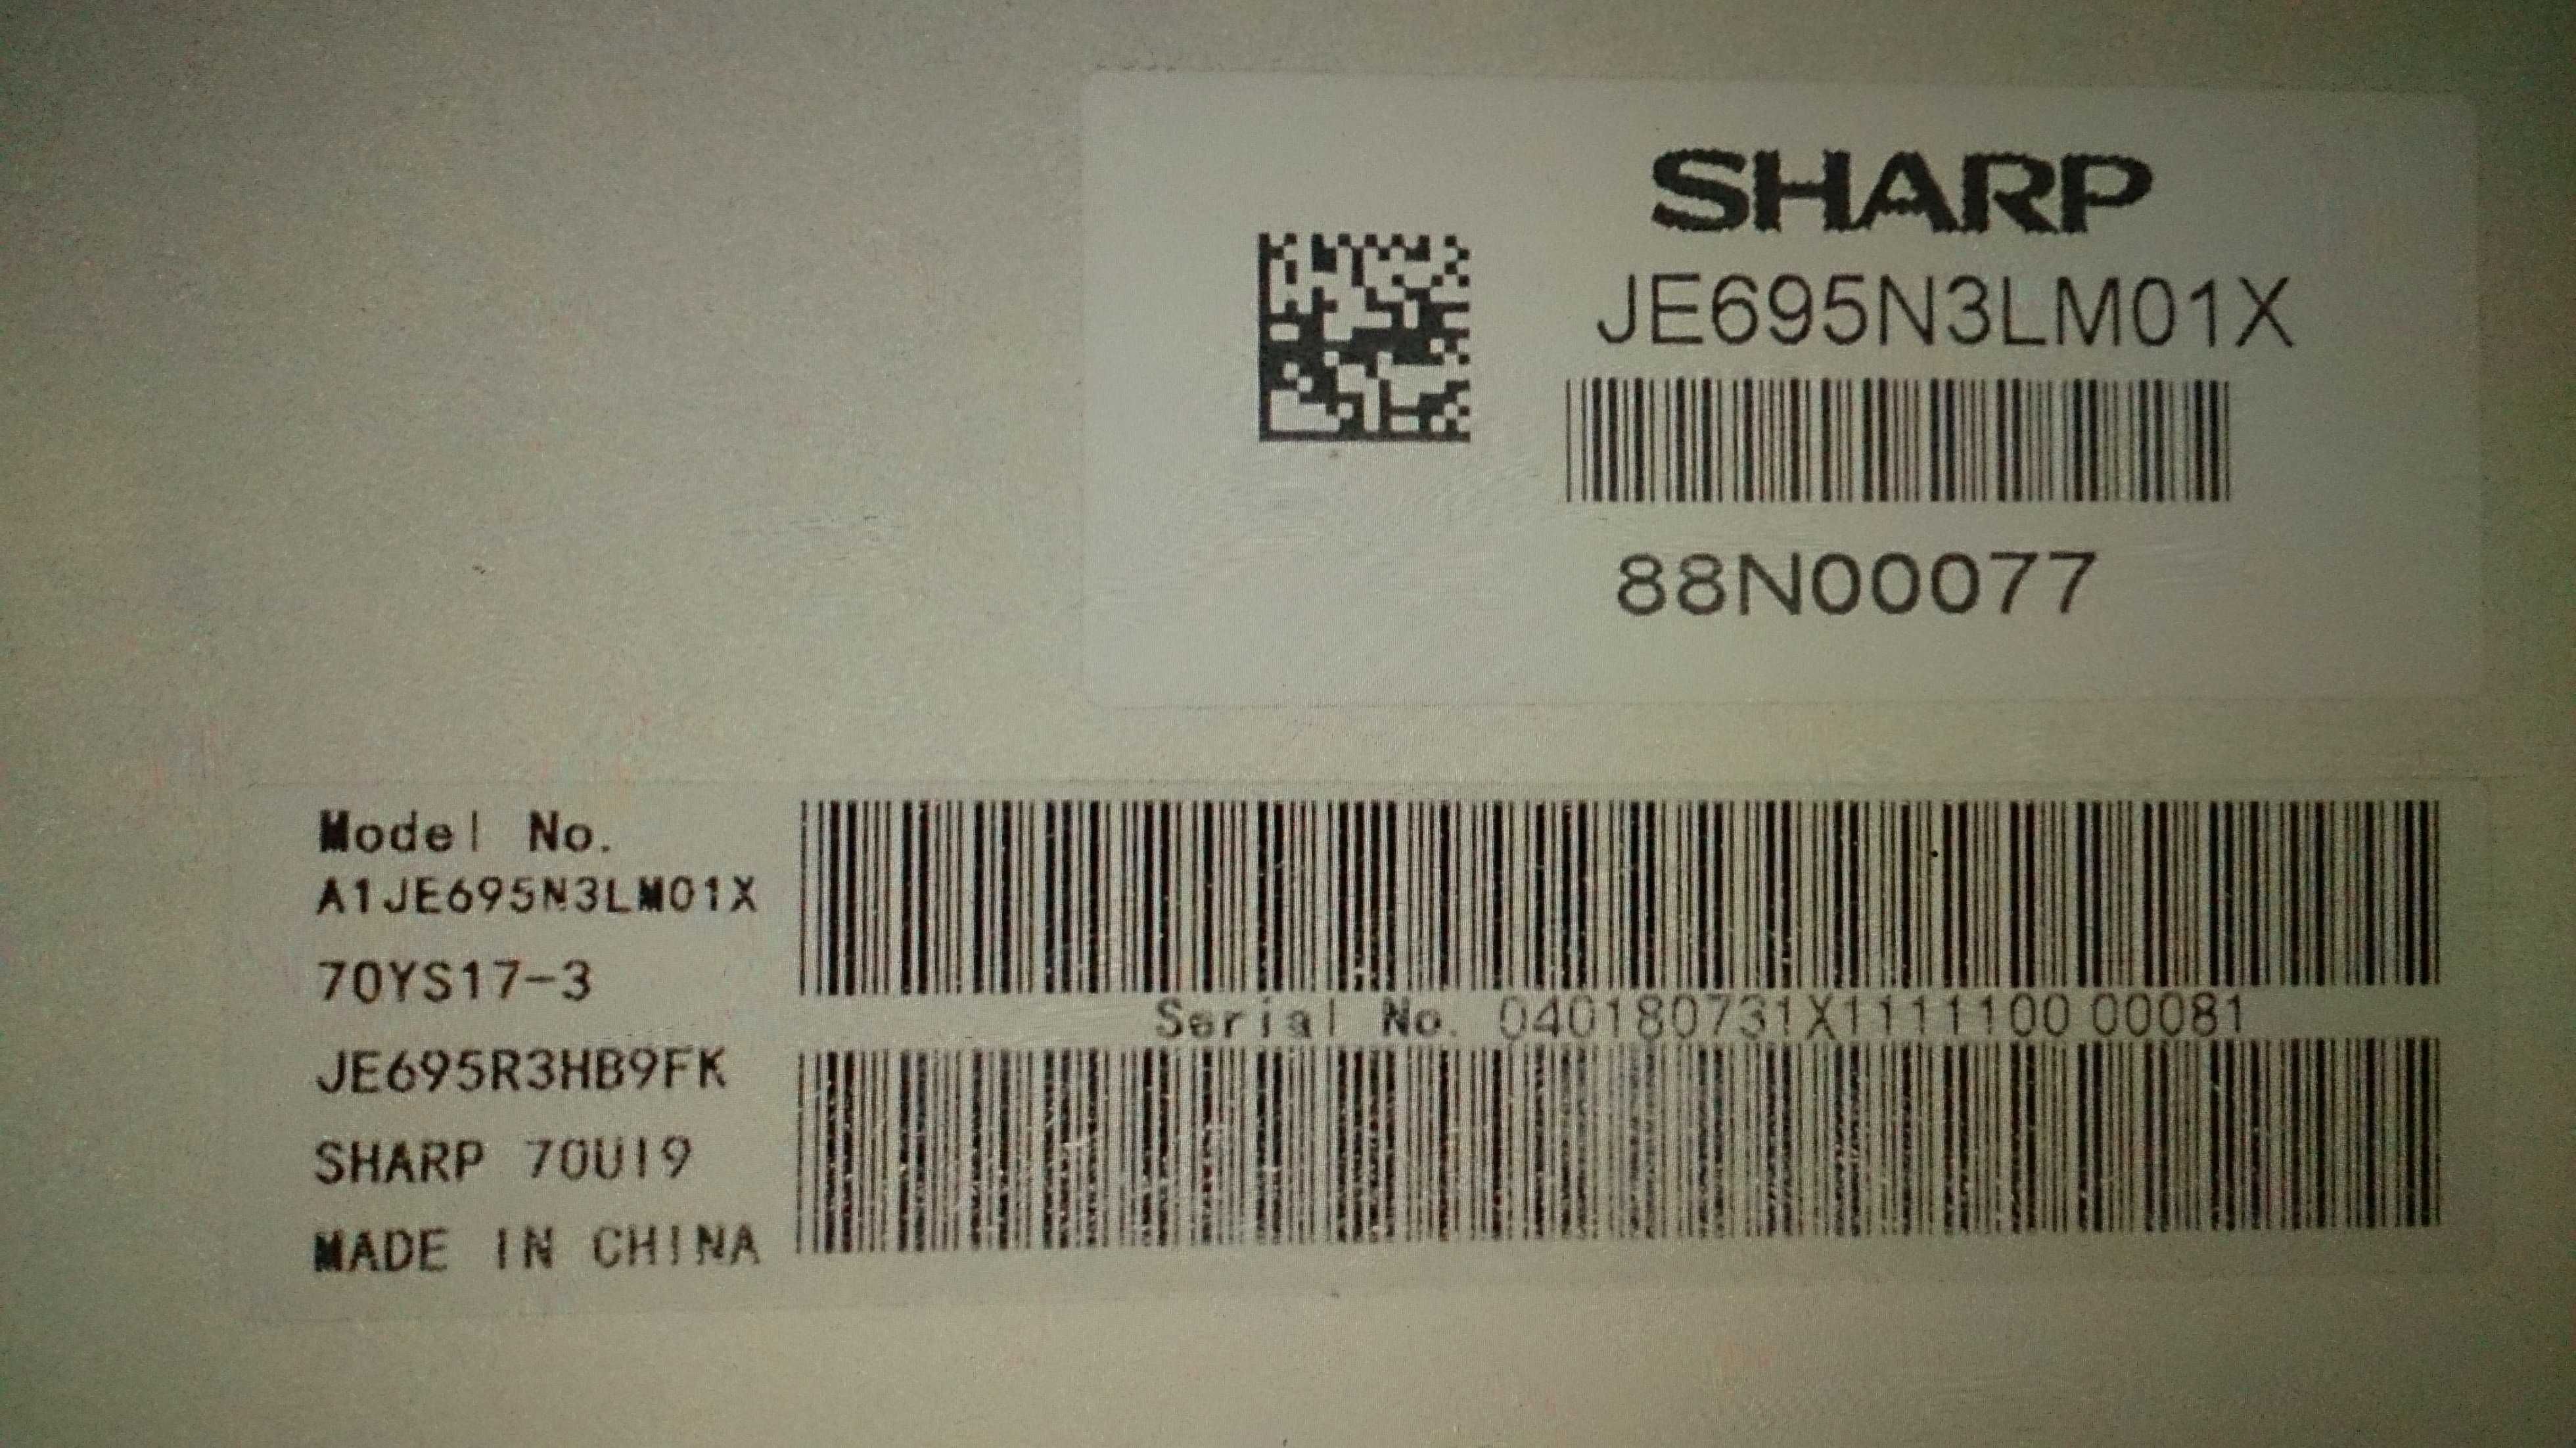 SHARP LC-70UI9362K. 70UI9362E JE695N3LM01X